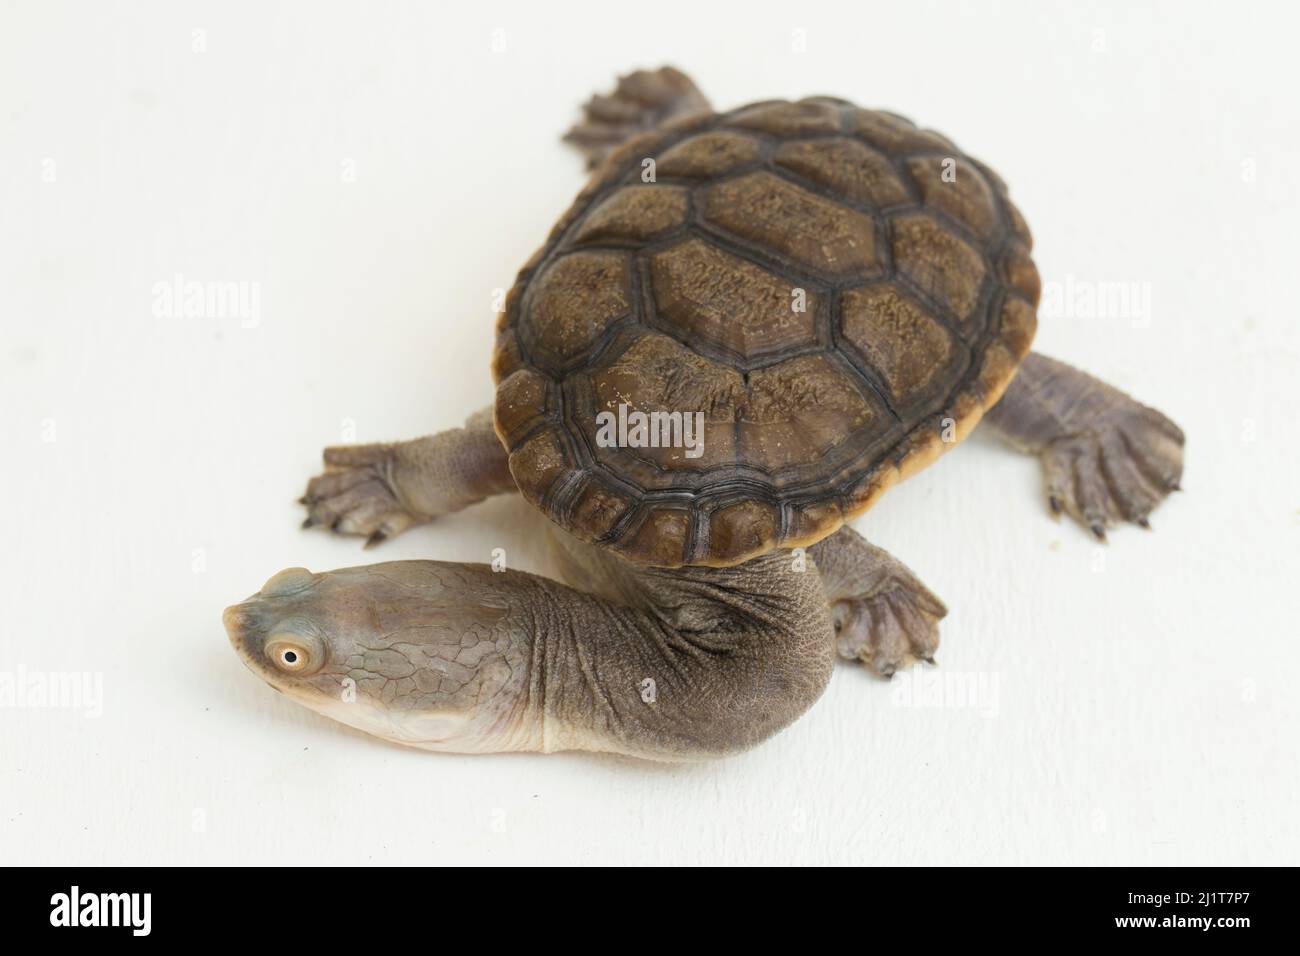 Siebenrock's snake necked turtle isolated on white background Stock Photo